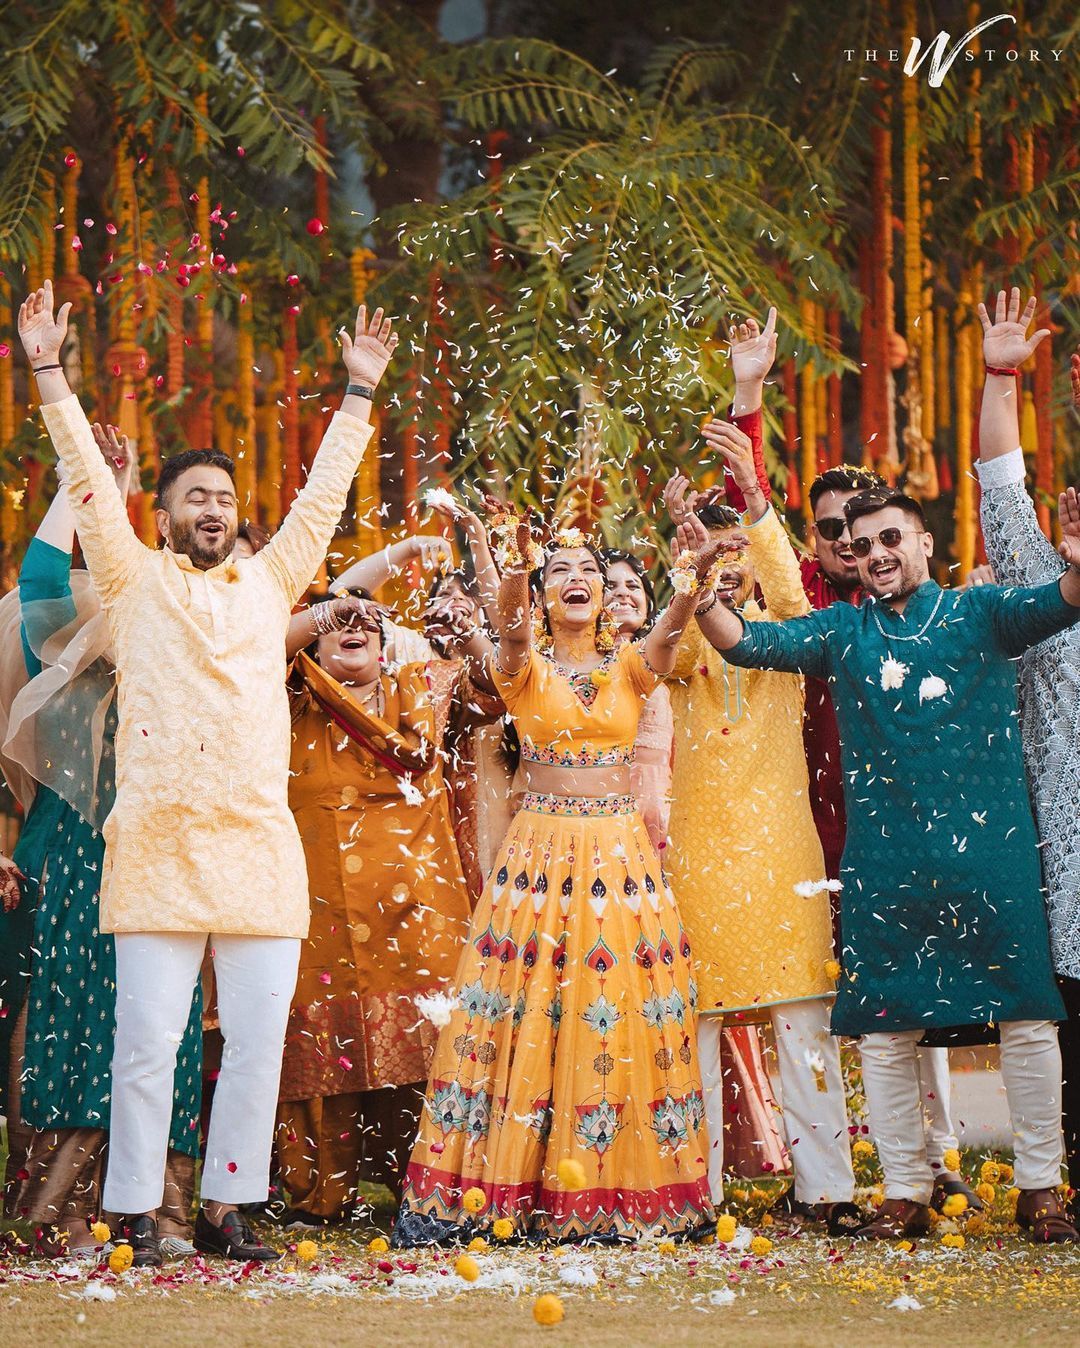 Yajurveda Chahal Dhanashree Verma Marriage Photo